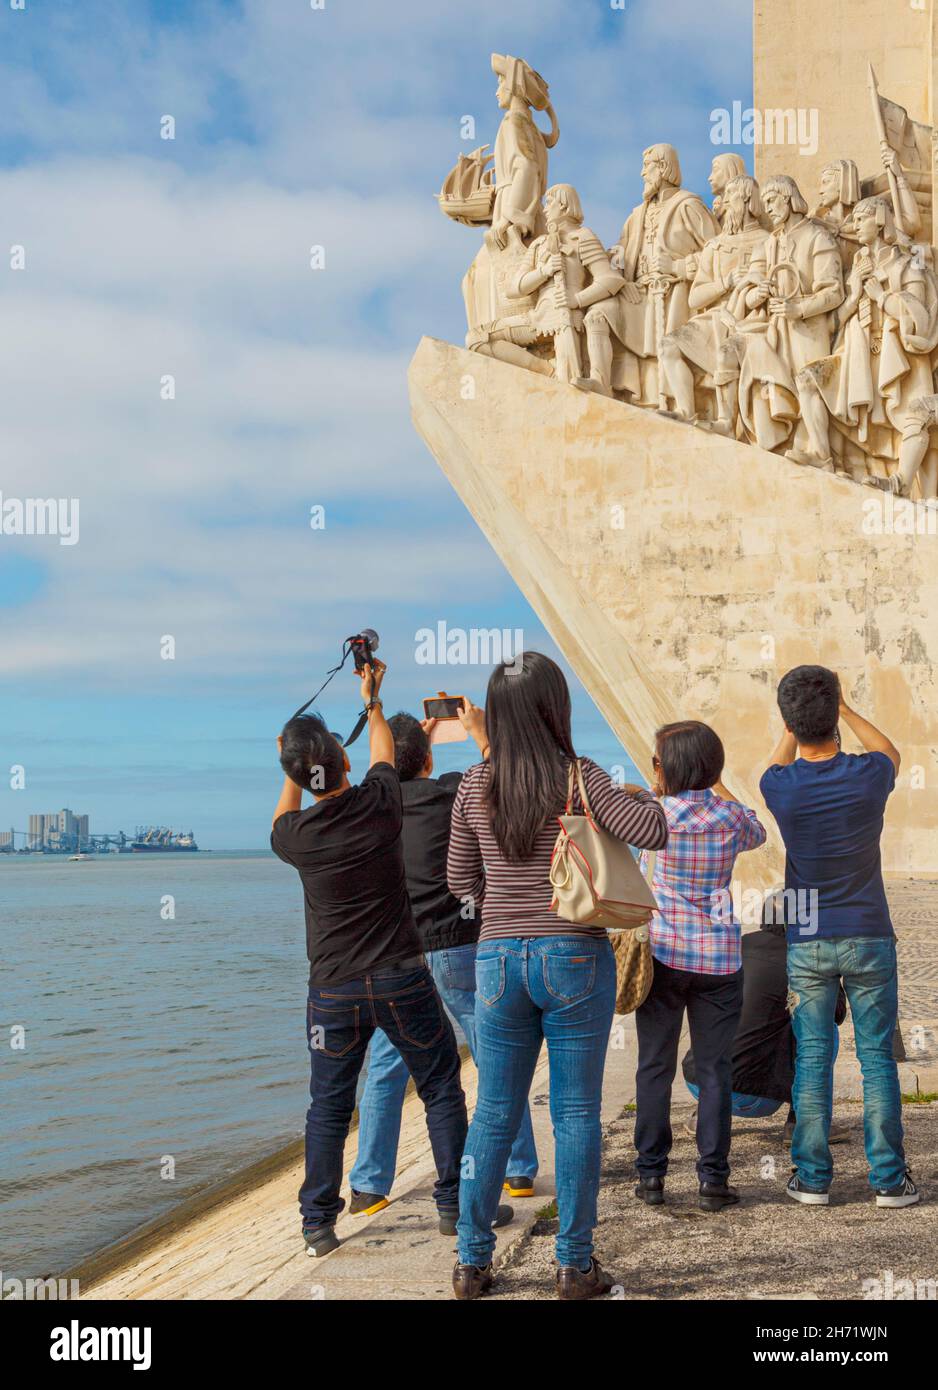 Lisbona, Portogallo. I turisti che fotografano il Padrao dos Descobrimentos o il Monumento alle scoperte, che commemora il 500° anniversario della fondazione Foto Stock